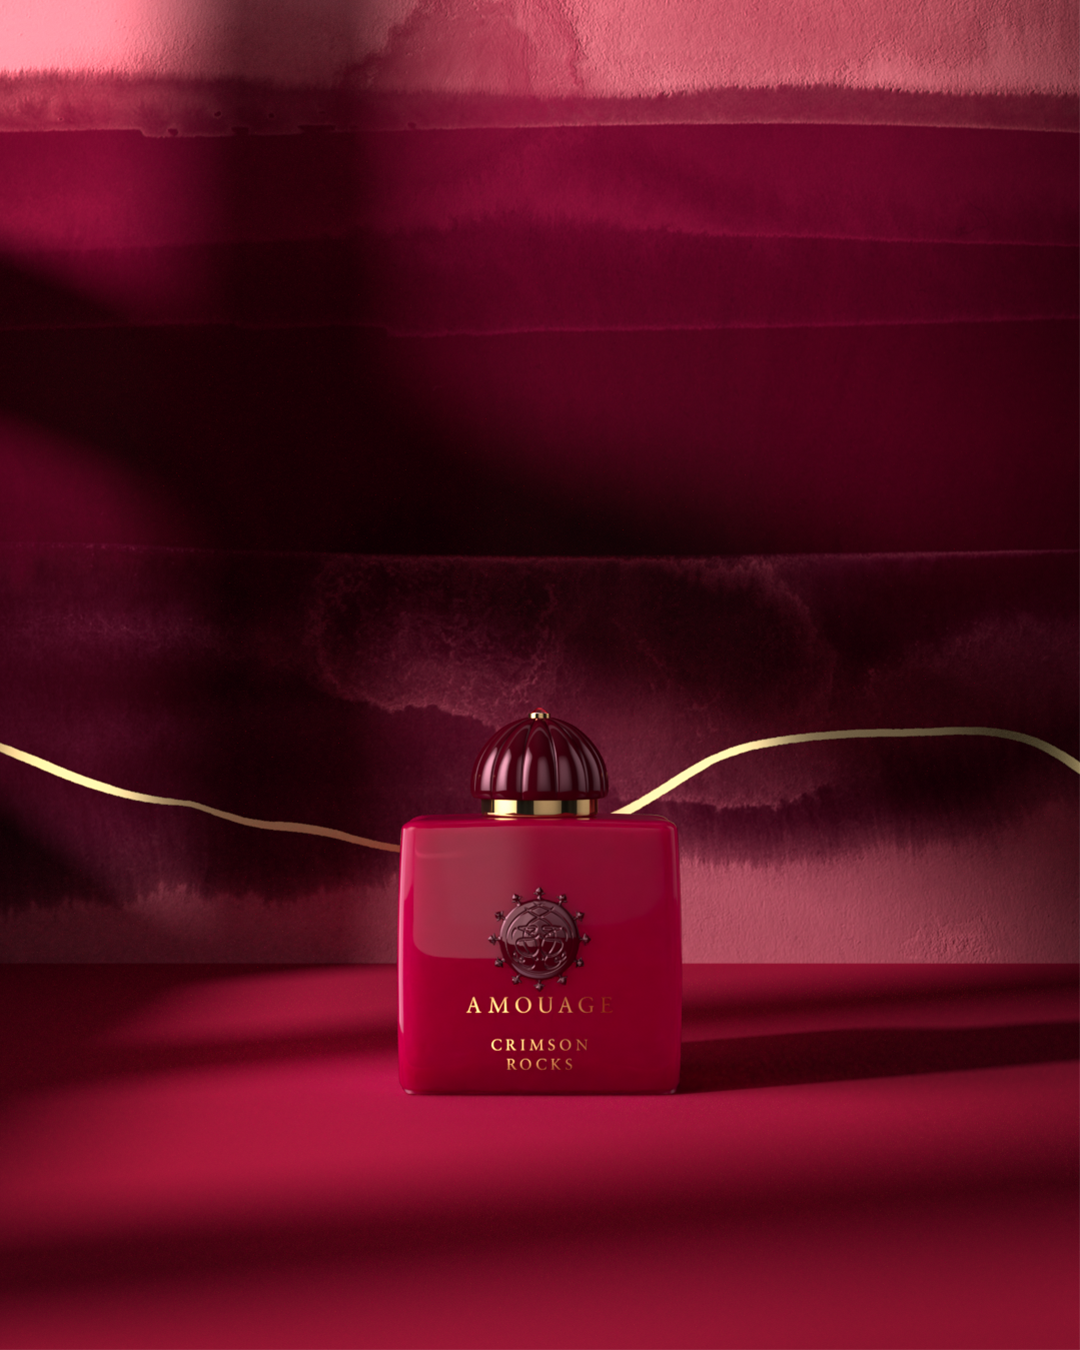 Amouage выпустил новую коллекцию ароматов Renaissance